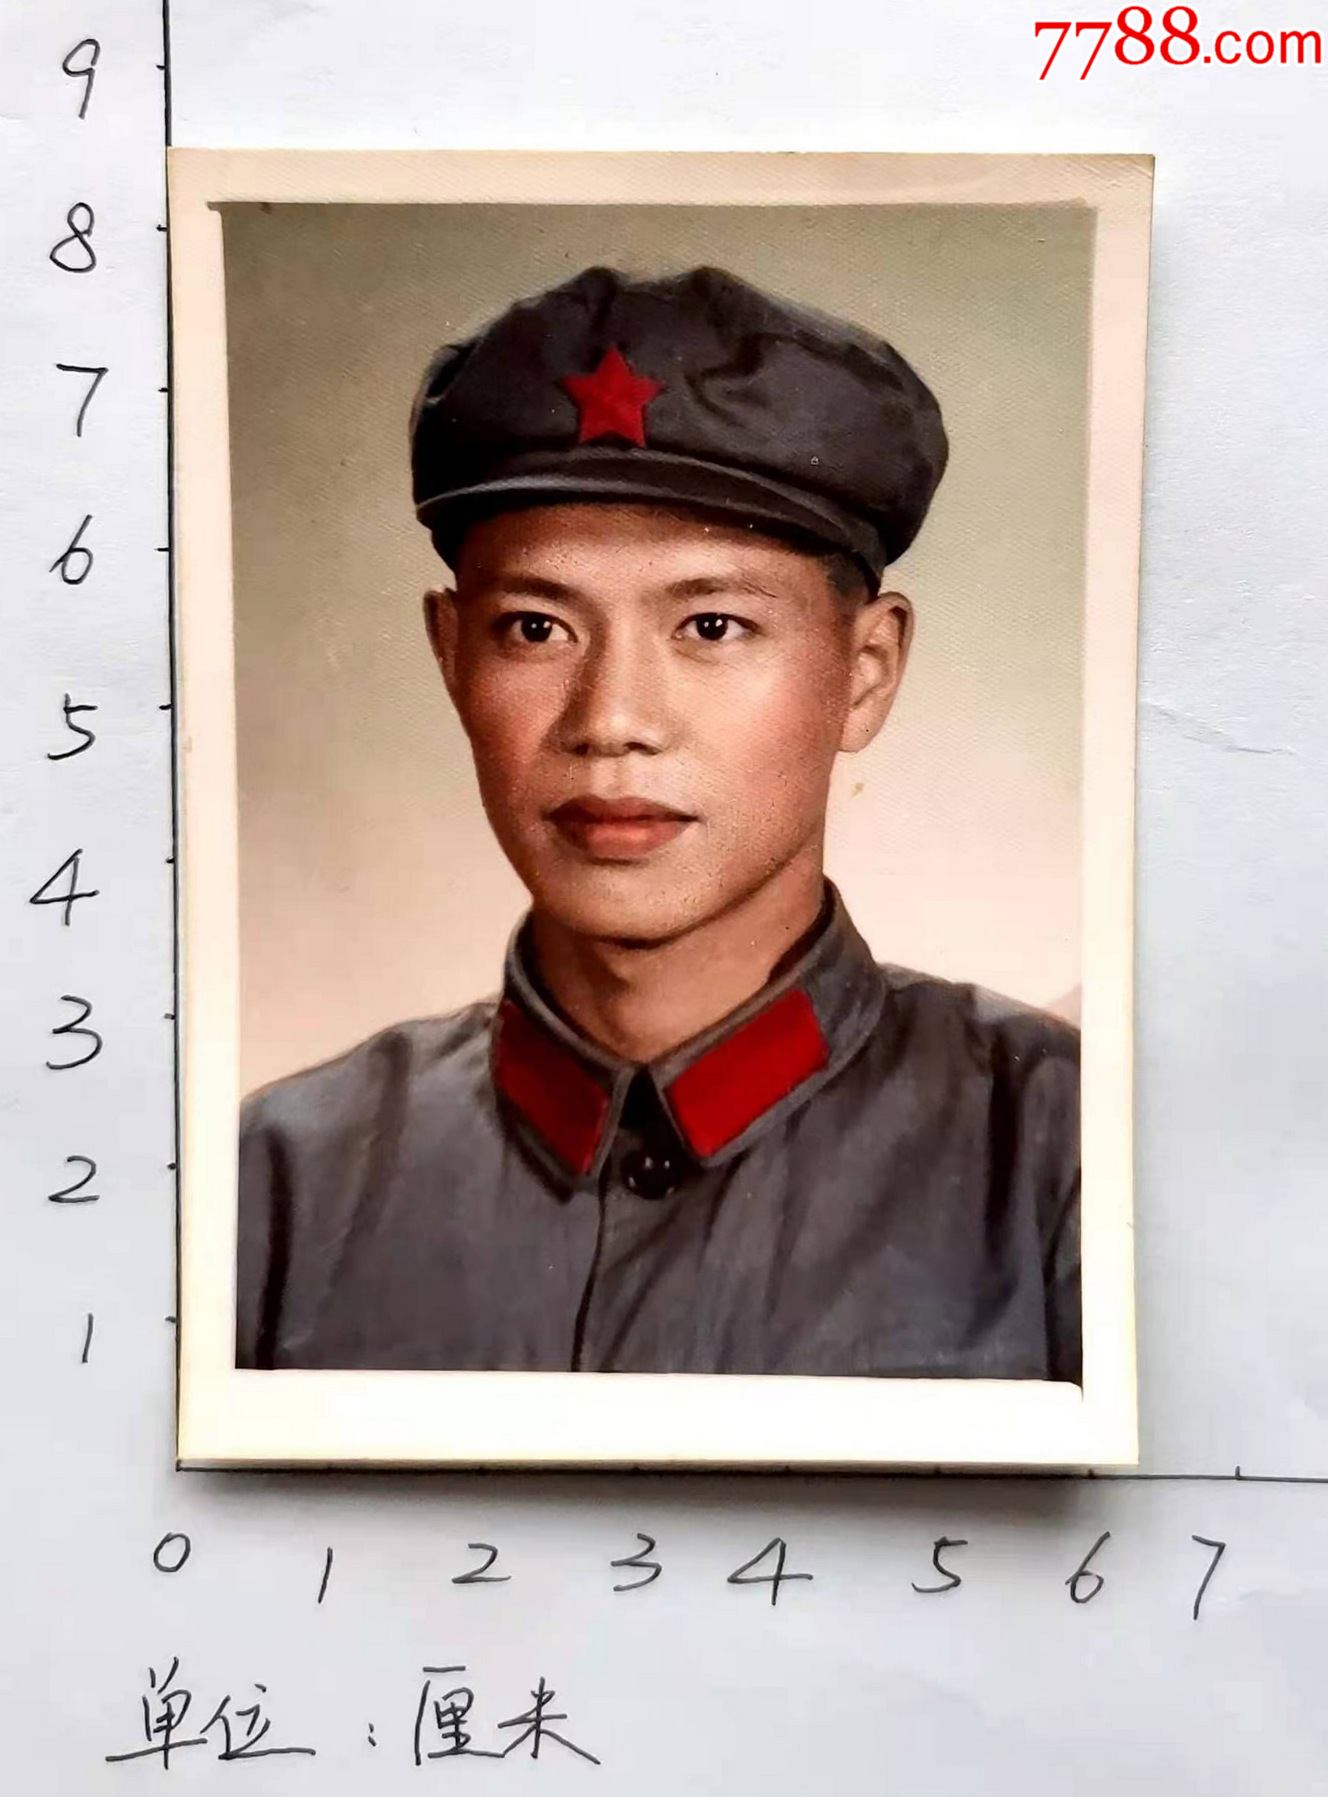 1965年解放军照片,手工上彩,清晰度高,背面写有65